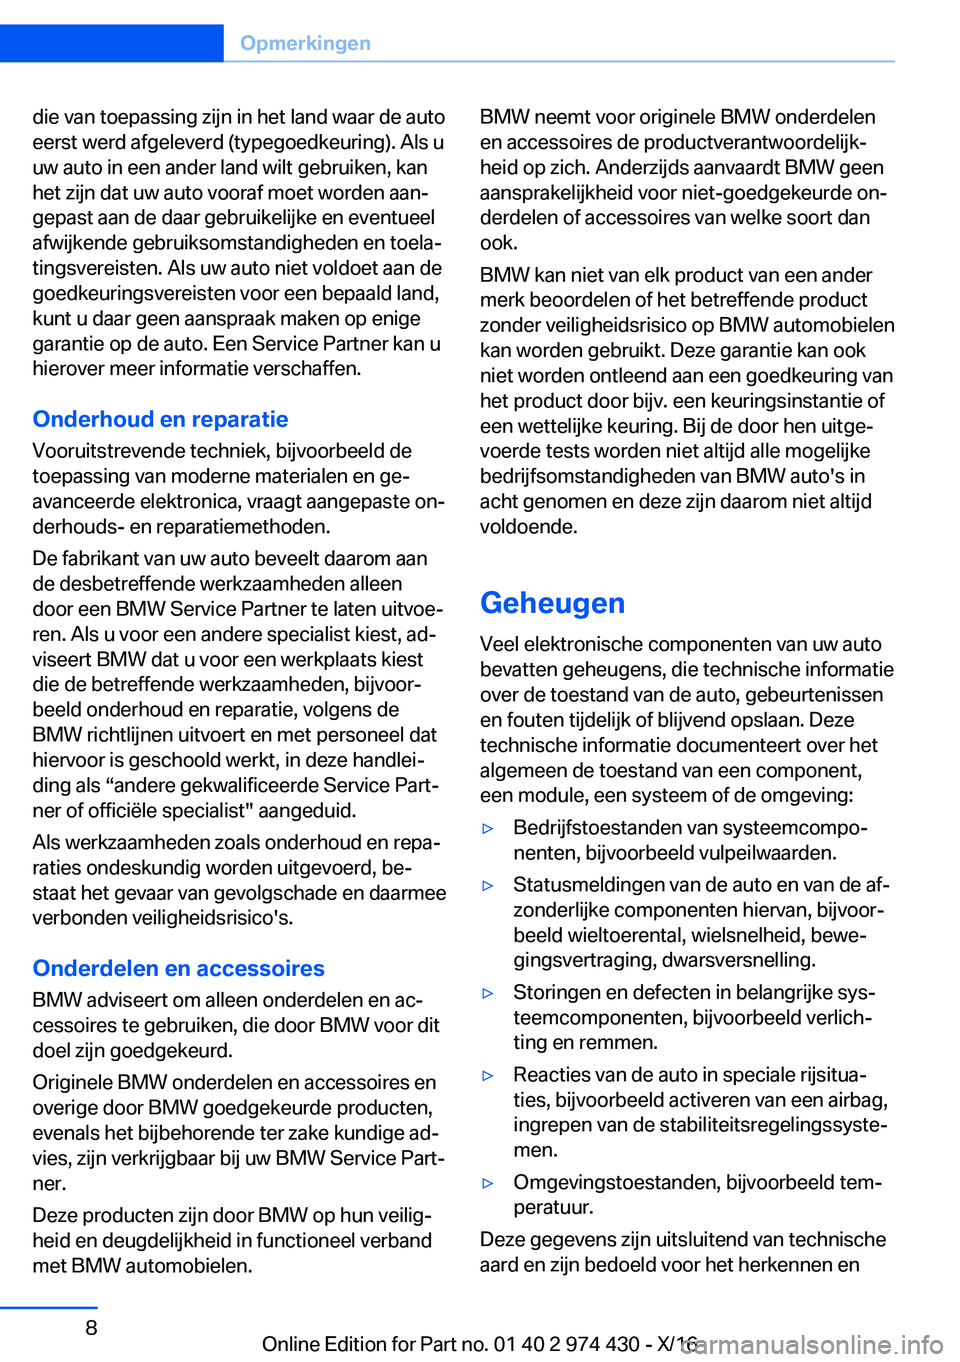 BMW 4 SERIES GRAN COUPE 2017  Instructieboekjes (in Dutch) �d�i�e� �v�a�n� �t�o�e�p�a�s�s�i�n�g� �z�i�j�n� �i�n� �h�e�t� �l�a�n�d� �w�a�a�r� �d�e� �a�u�t�o
�e�e�r�s�t� �w�e�r�d� �a�f�g�e�l�e�v�e�r�d� �(�t�y�p�e�g�o�e�d�k�e�u�r�i�n�g�)�.� �A�l�s� �u �u�w� �a�u